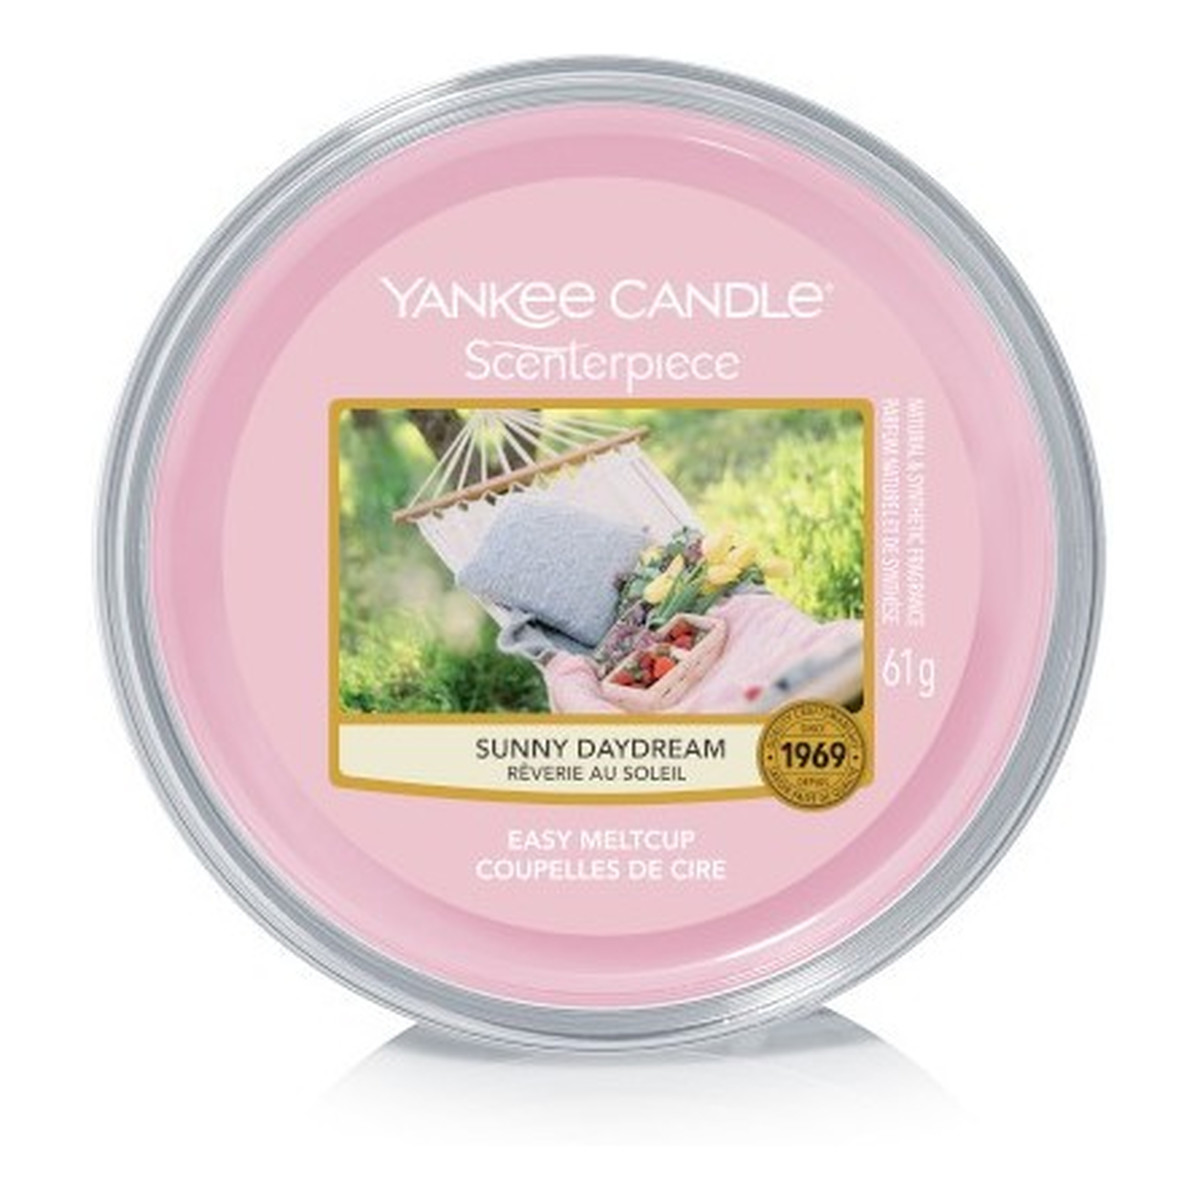 Yankee Candle Scenterpiece wosk do elektrycznego kominka Sunny Daydream 61g